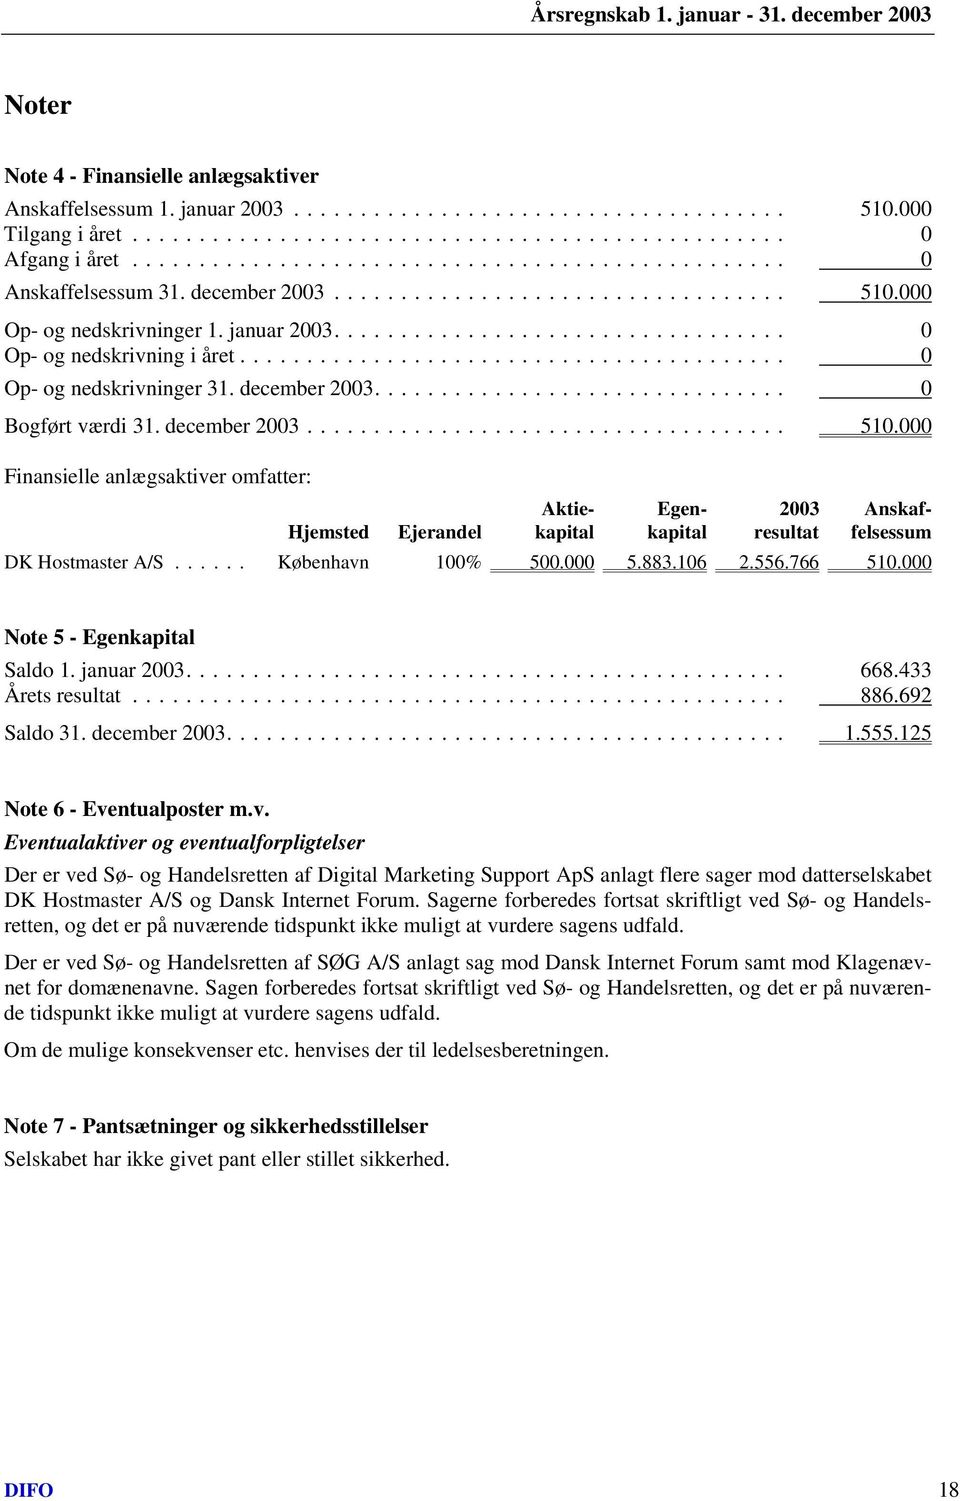 000 Finansielle anlægsaktiver omfatter: Aktie- Egen- 2003 Anskaf- Hjemsted Ejerandel kapital kapital resultat felsessum DK Hostmaster A/S... København 100% 500.000 5.883.106 2.556.766 510.